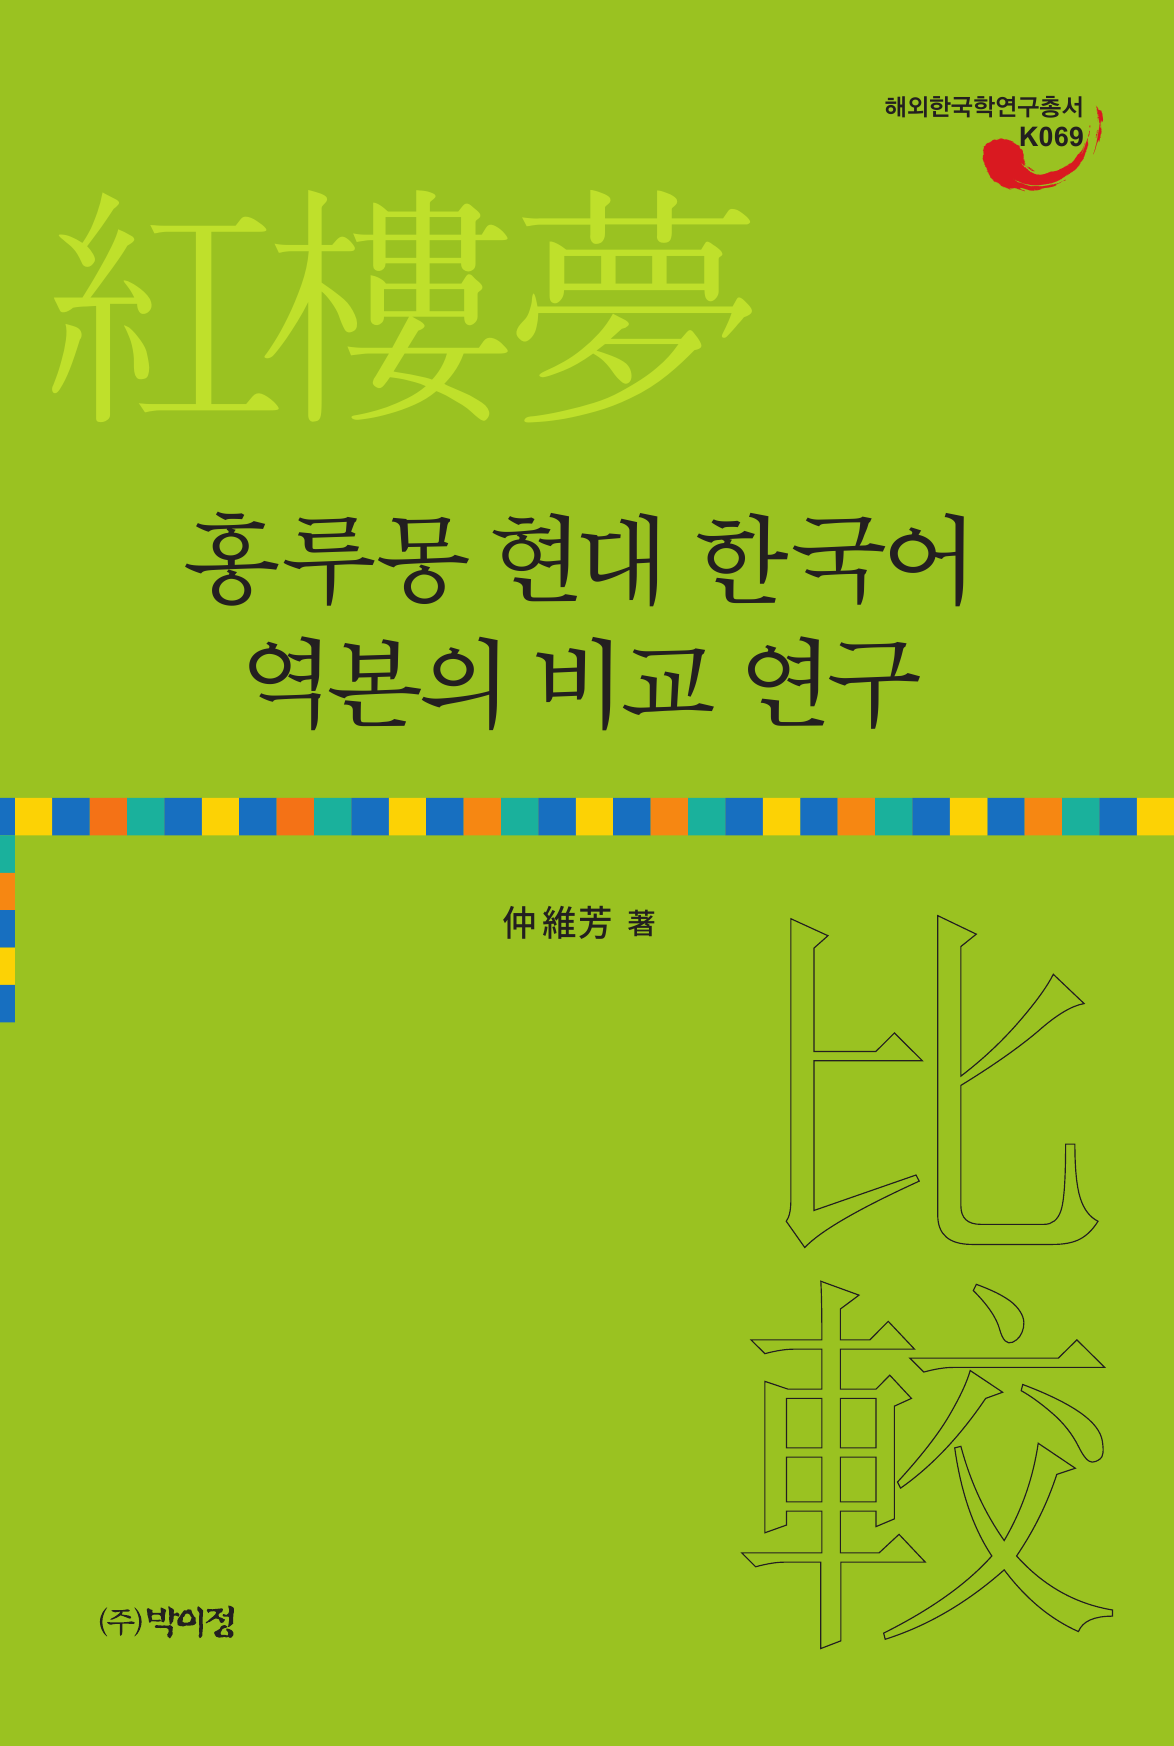 홍루몽 현대 한국어 역본의 비교 연구